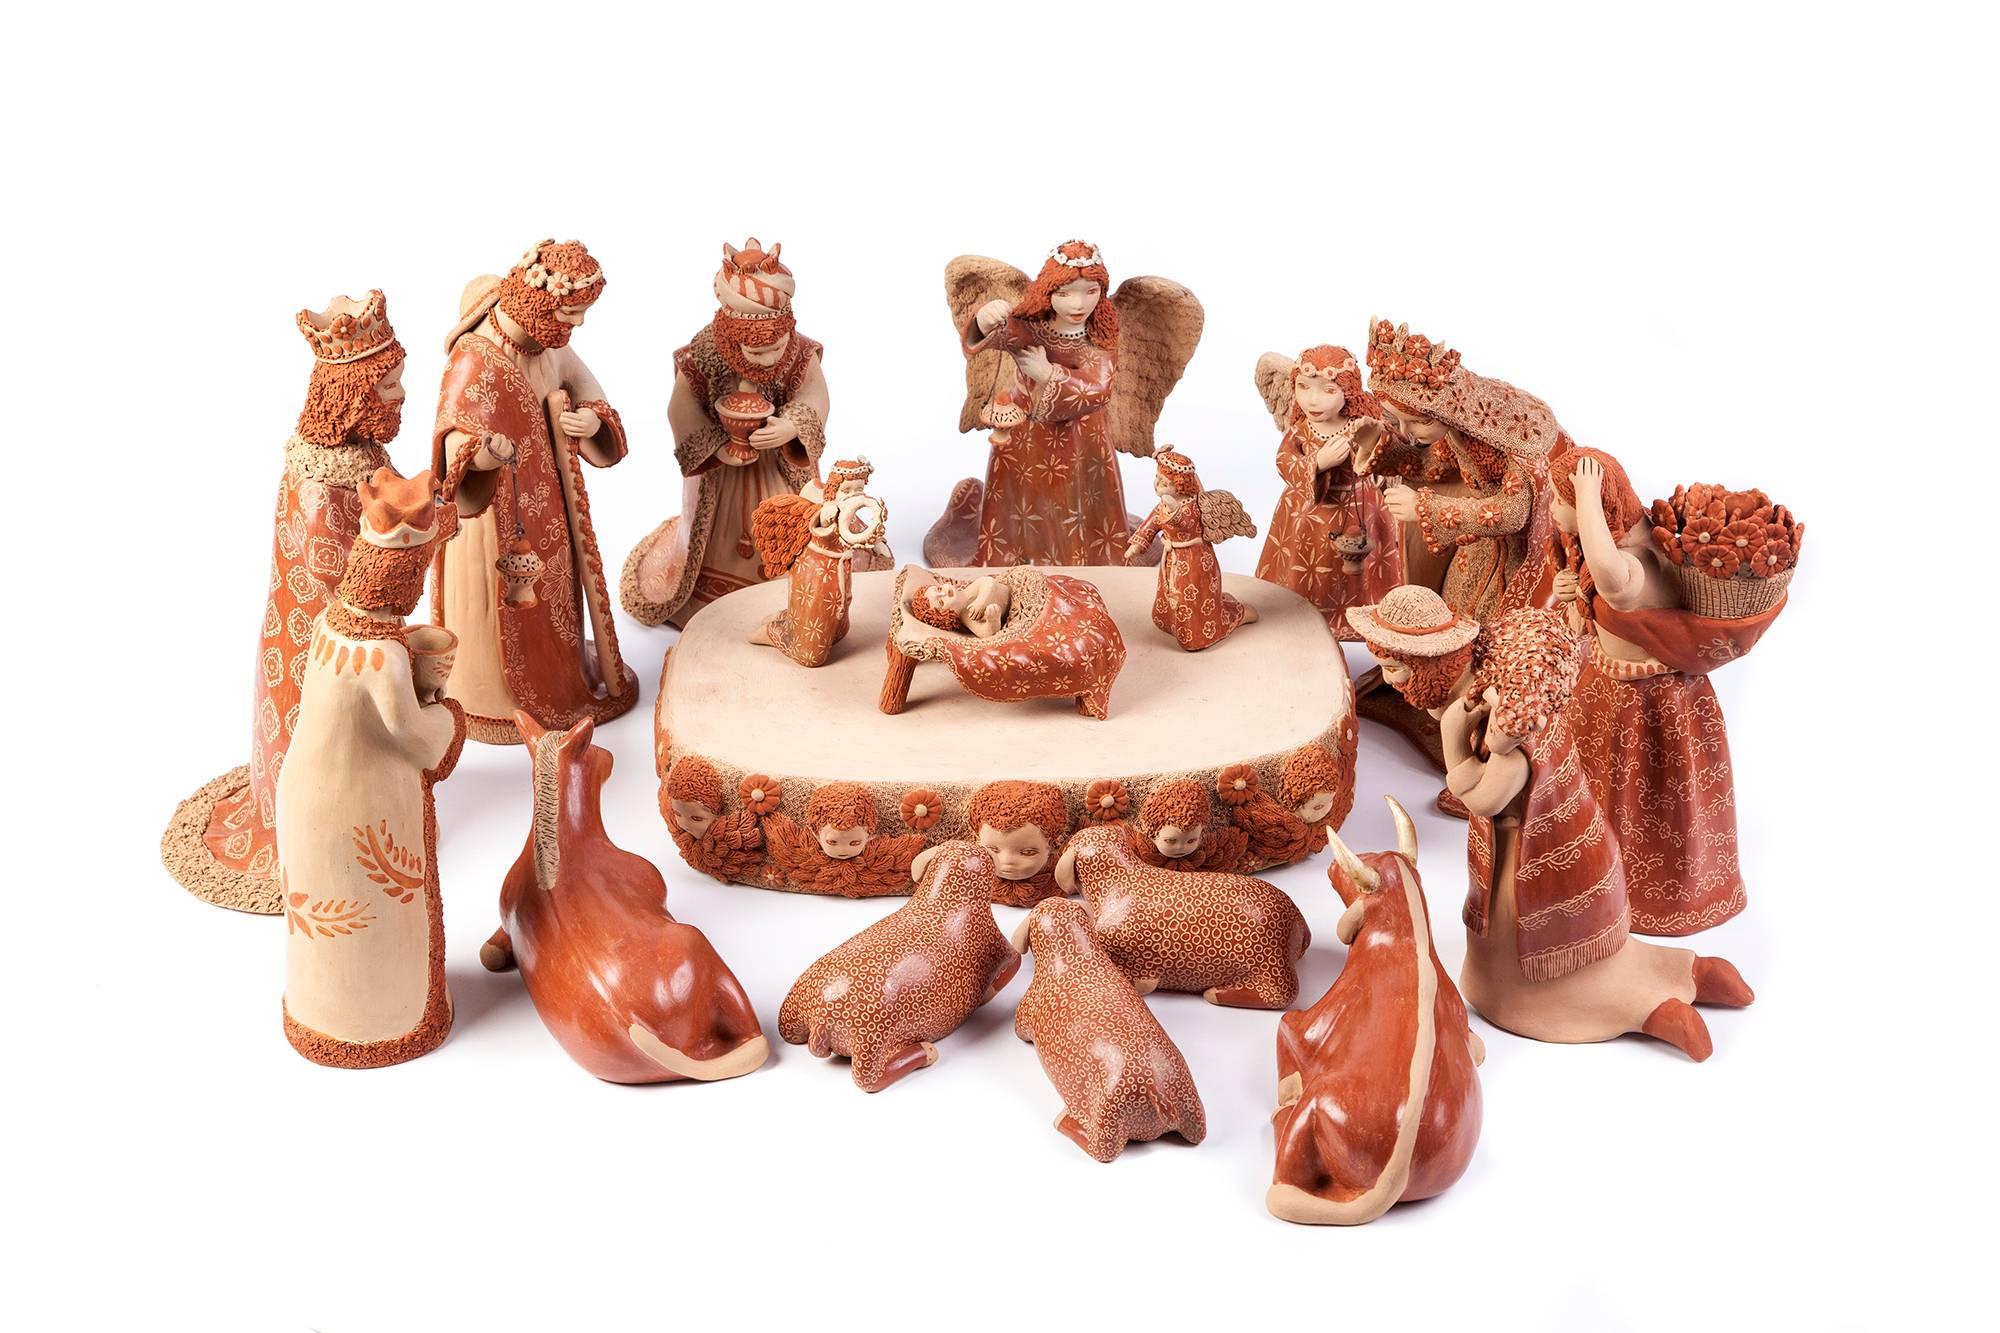 Unknown Abstract Sculpture - Nacimiento de Barro / Ceramics Mexican Folk Art Clay Nativity